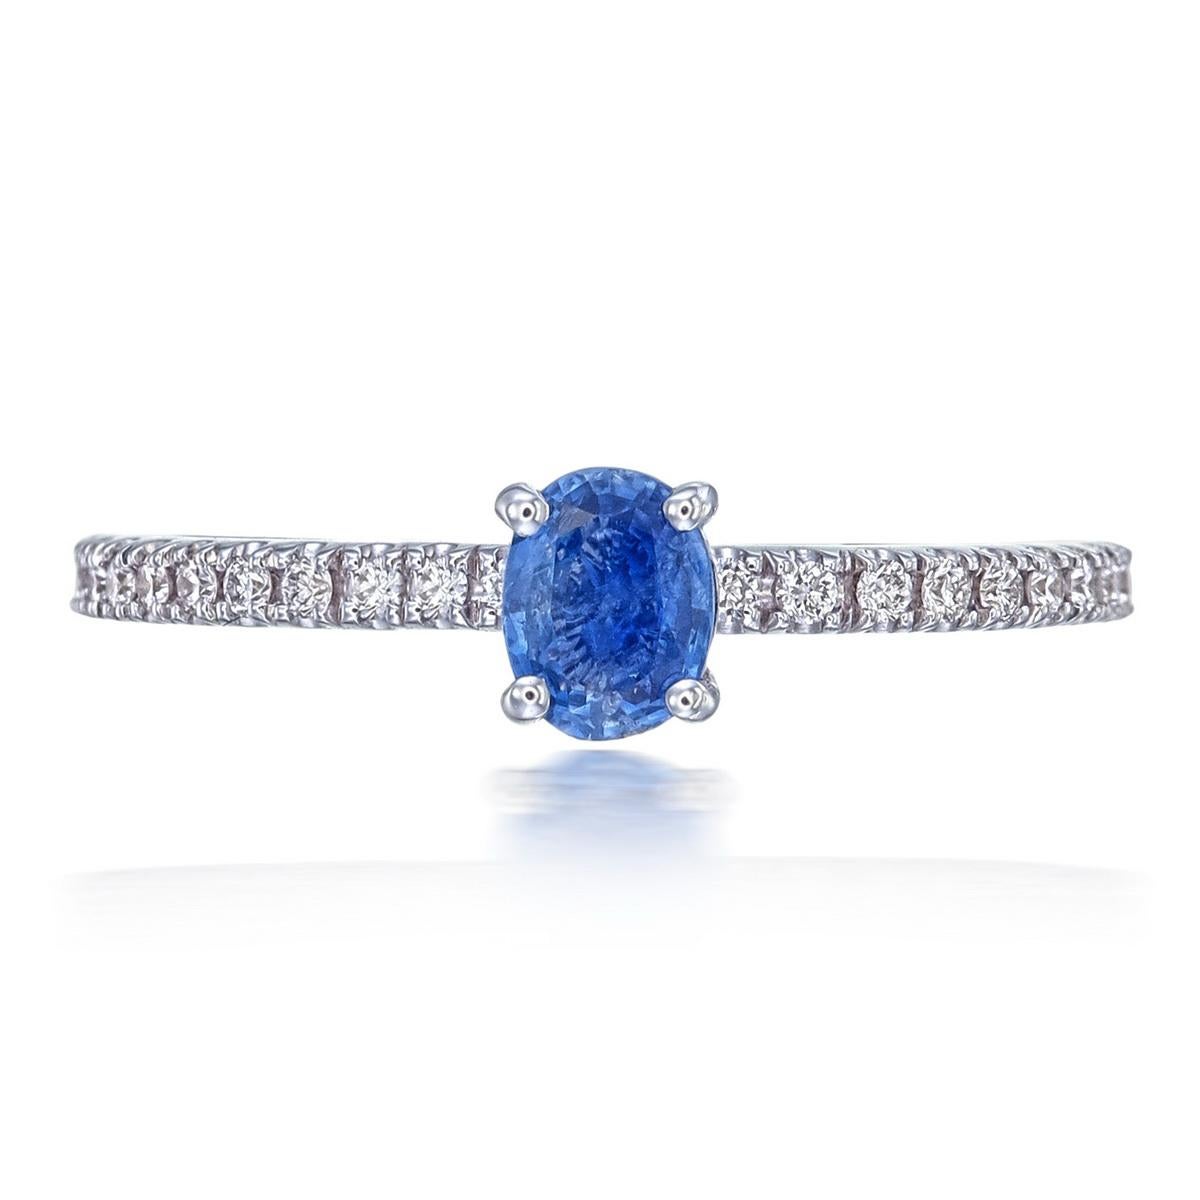 Ein brandneuer Ring mit blauem Saphir und Diamanten von Rewa Jewellery. Eines unserer meistverkauften Designs ist jetzt auch mit einem Kashmir-Saphir erhältlich! Dieser Ring ist perfekt für das tägliche Tragen und lässt sich leicht zu jedem Outfit